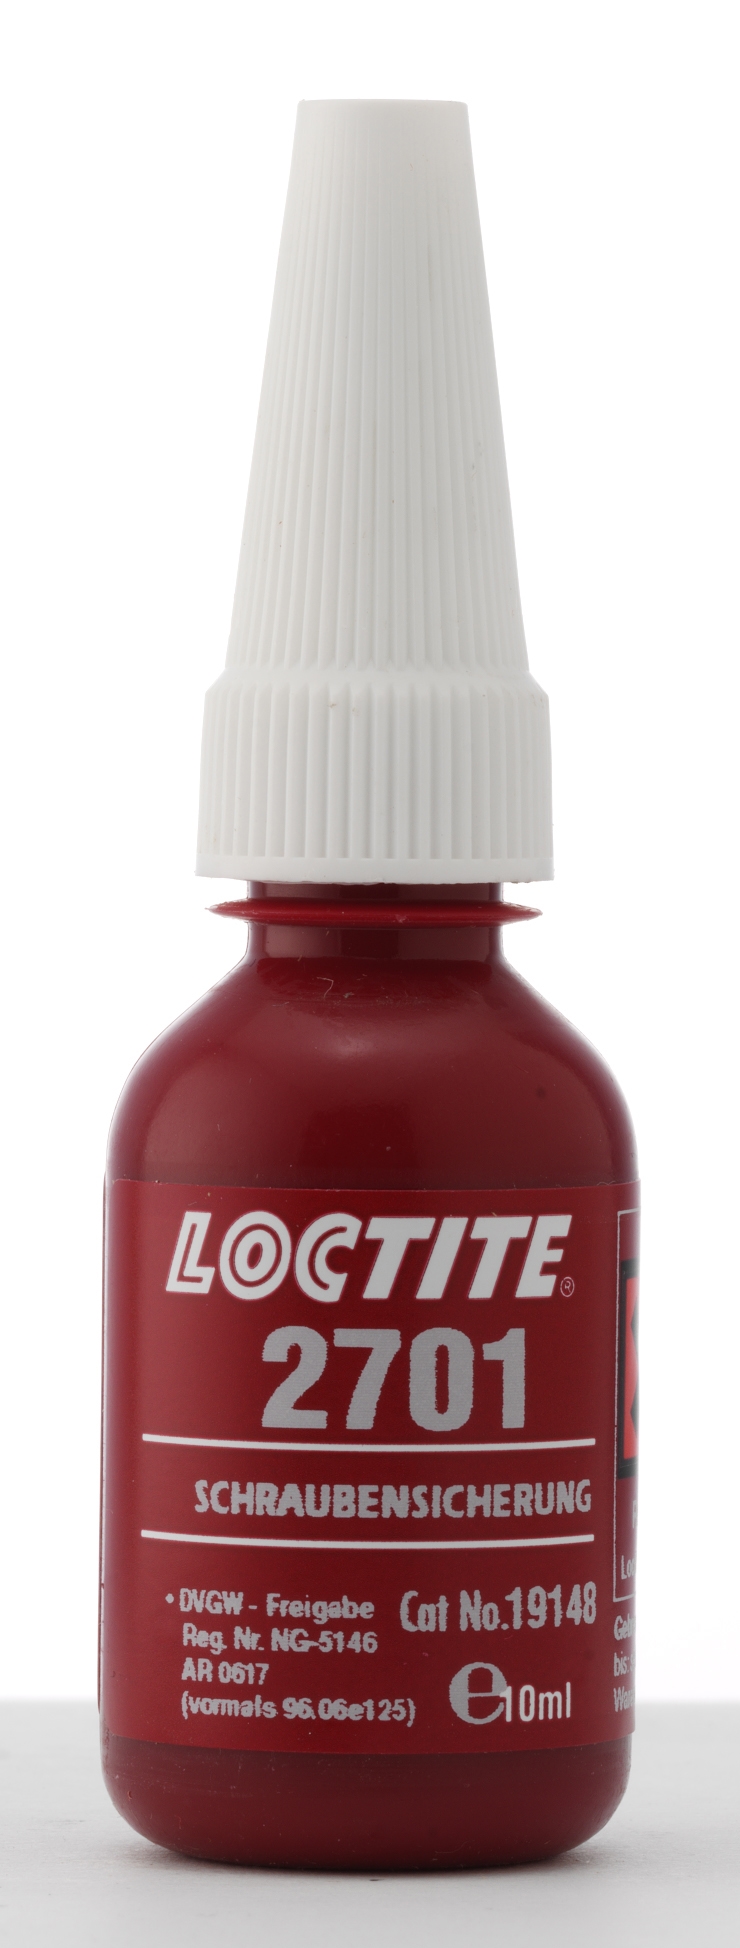 Loctite 2701 Schraubensicherung